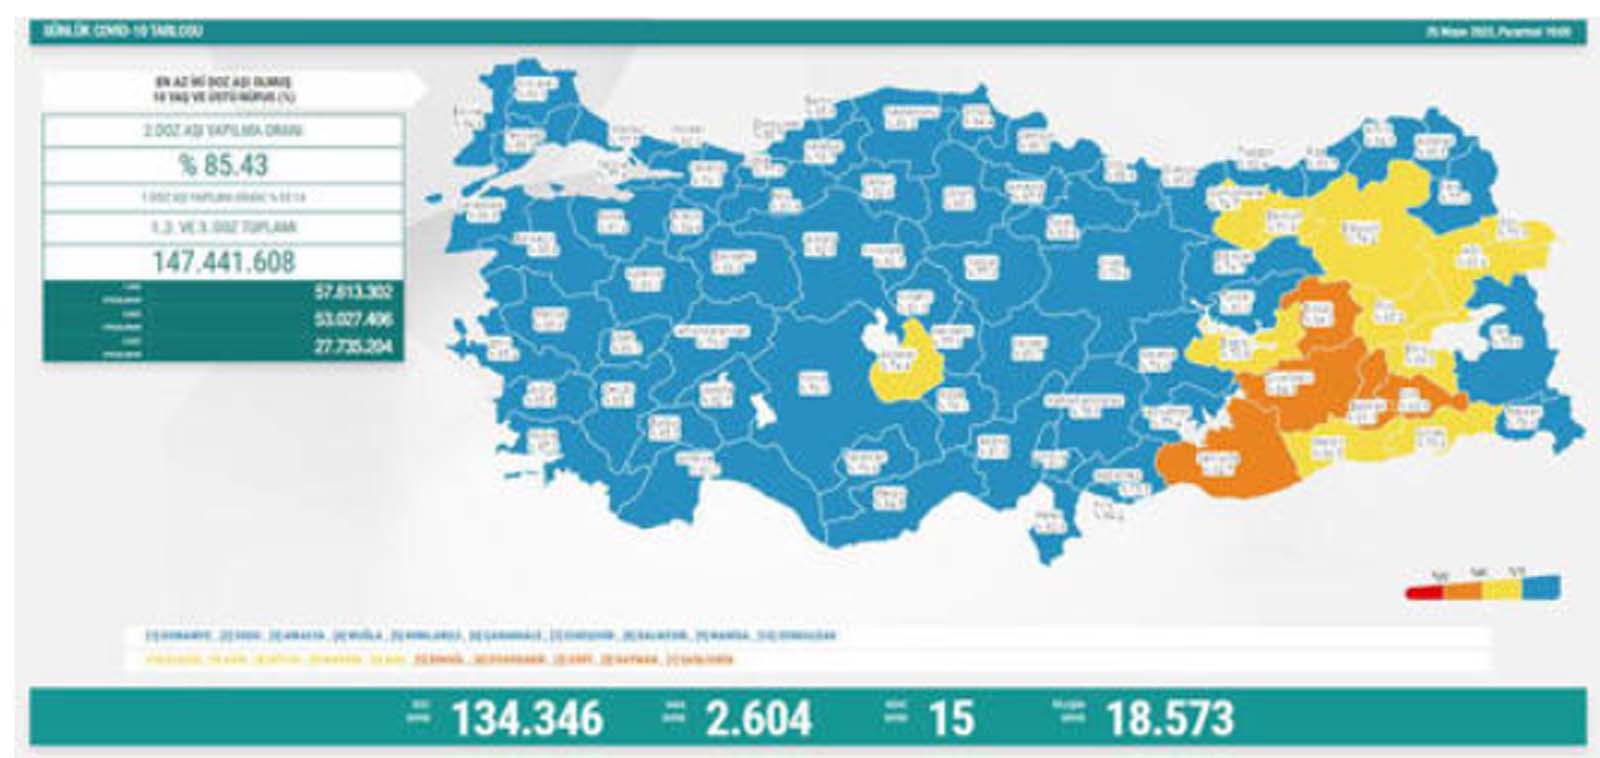 Son dakika: 25 Nisan 2022 Pazartesi Türkiye Günlük Koronavirüs Tablosu | Son 24 saat korona tablosu